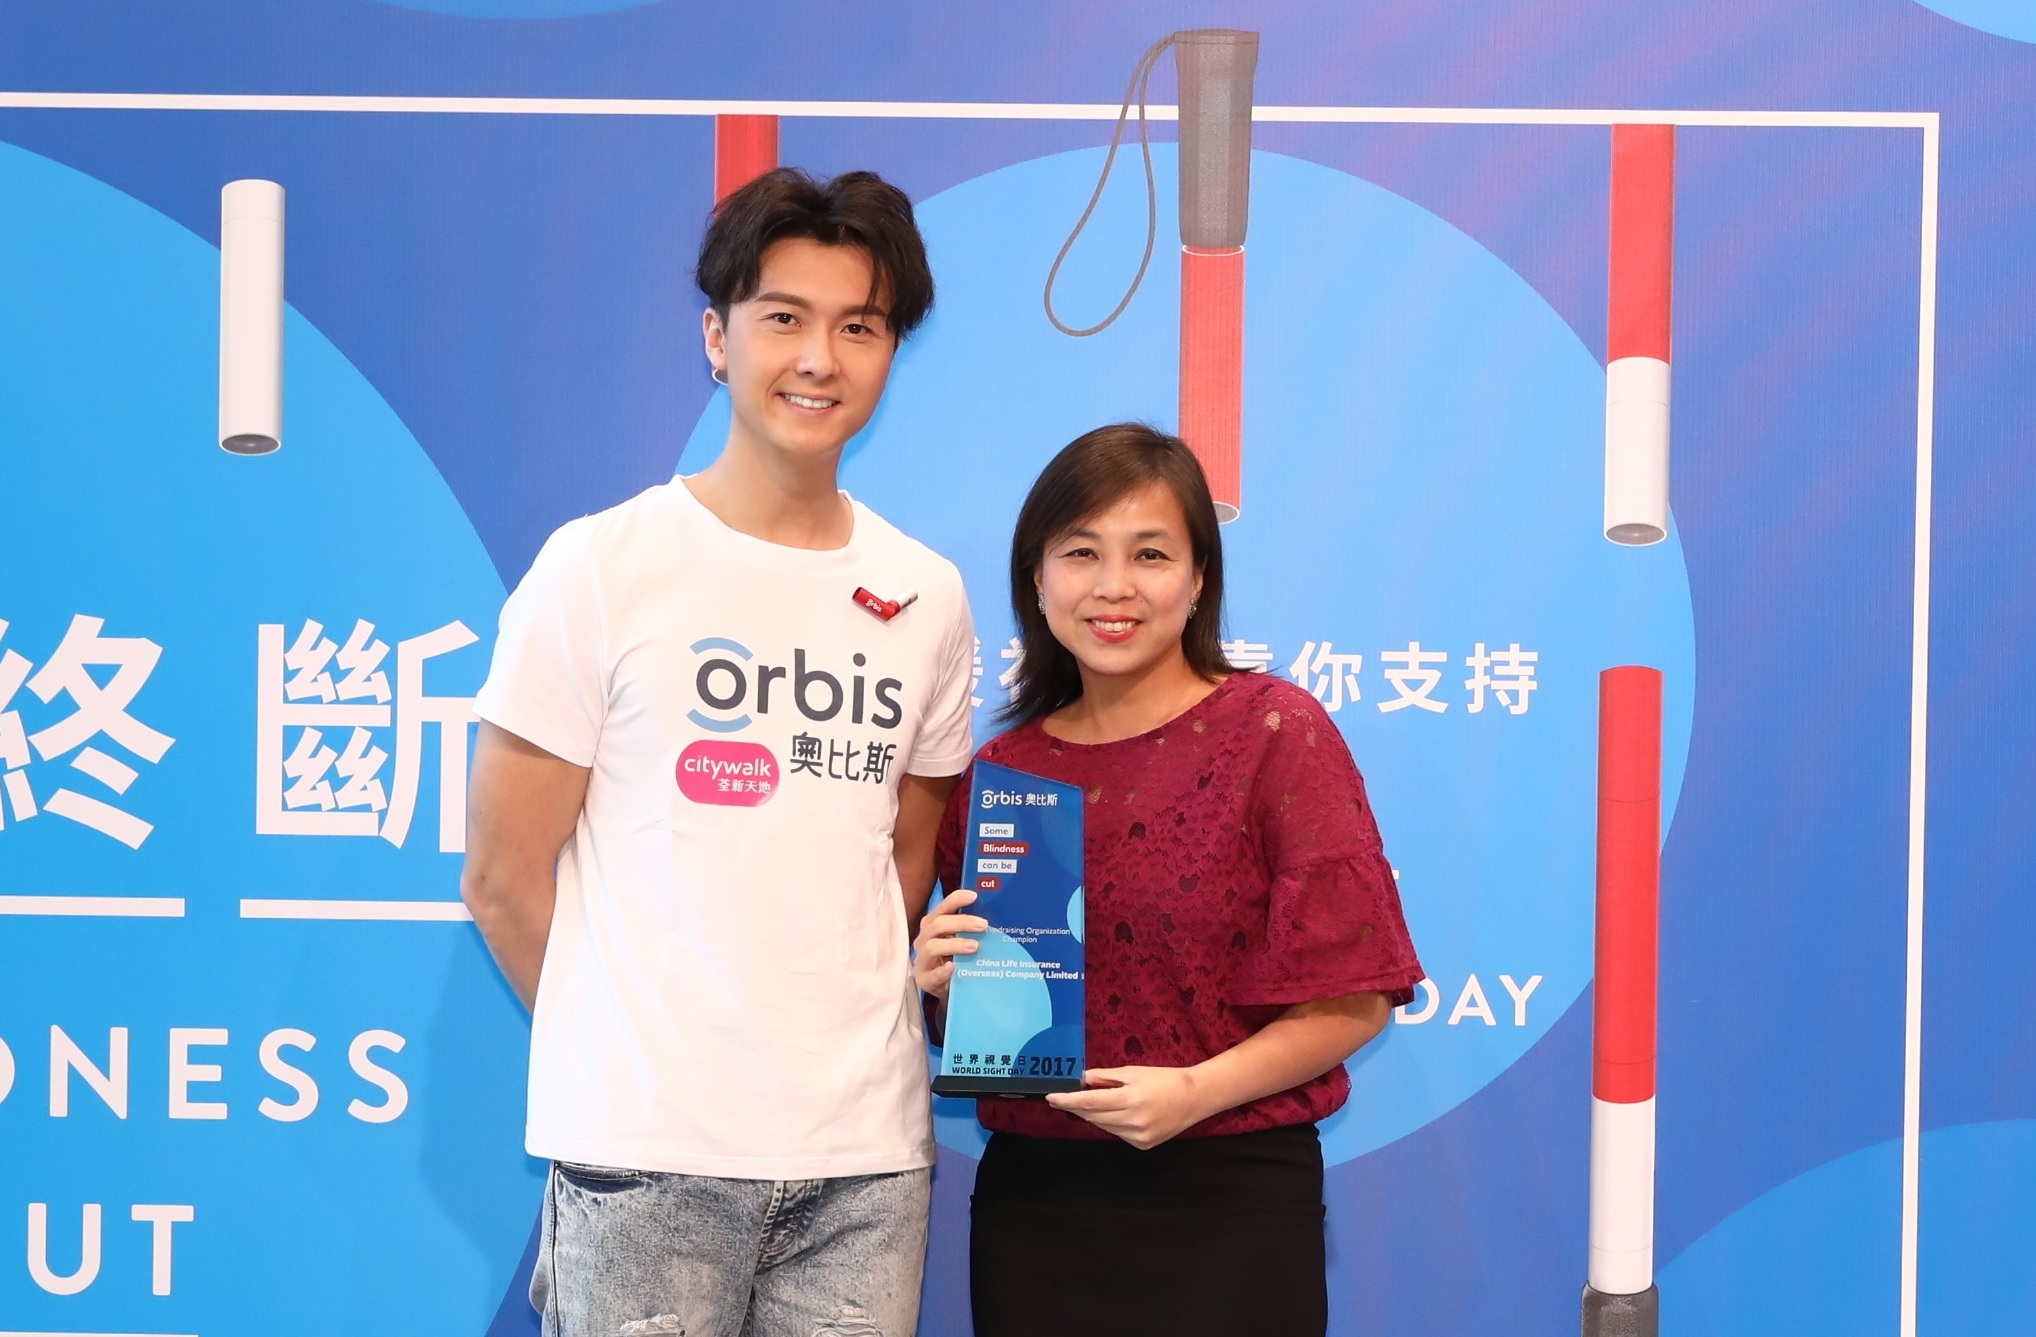 中国人寿（海外）成为「奥比斯世界视觉日」首席伙伴，荣获「最高筹款金额机构 - 冠军」奖项，为眼疾患者带来光明转机